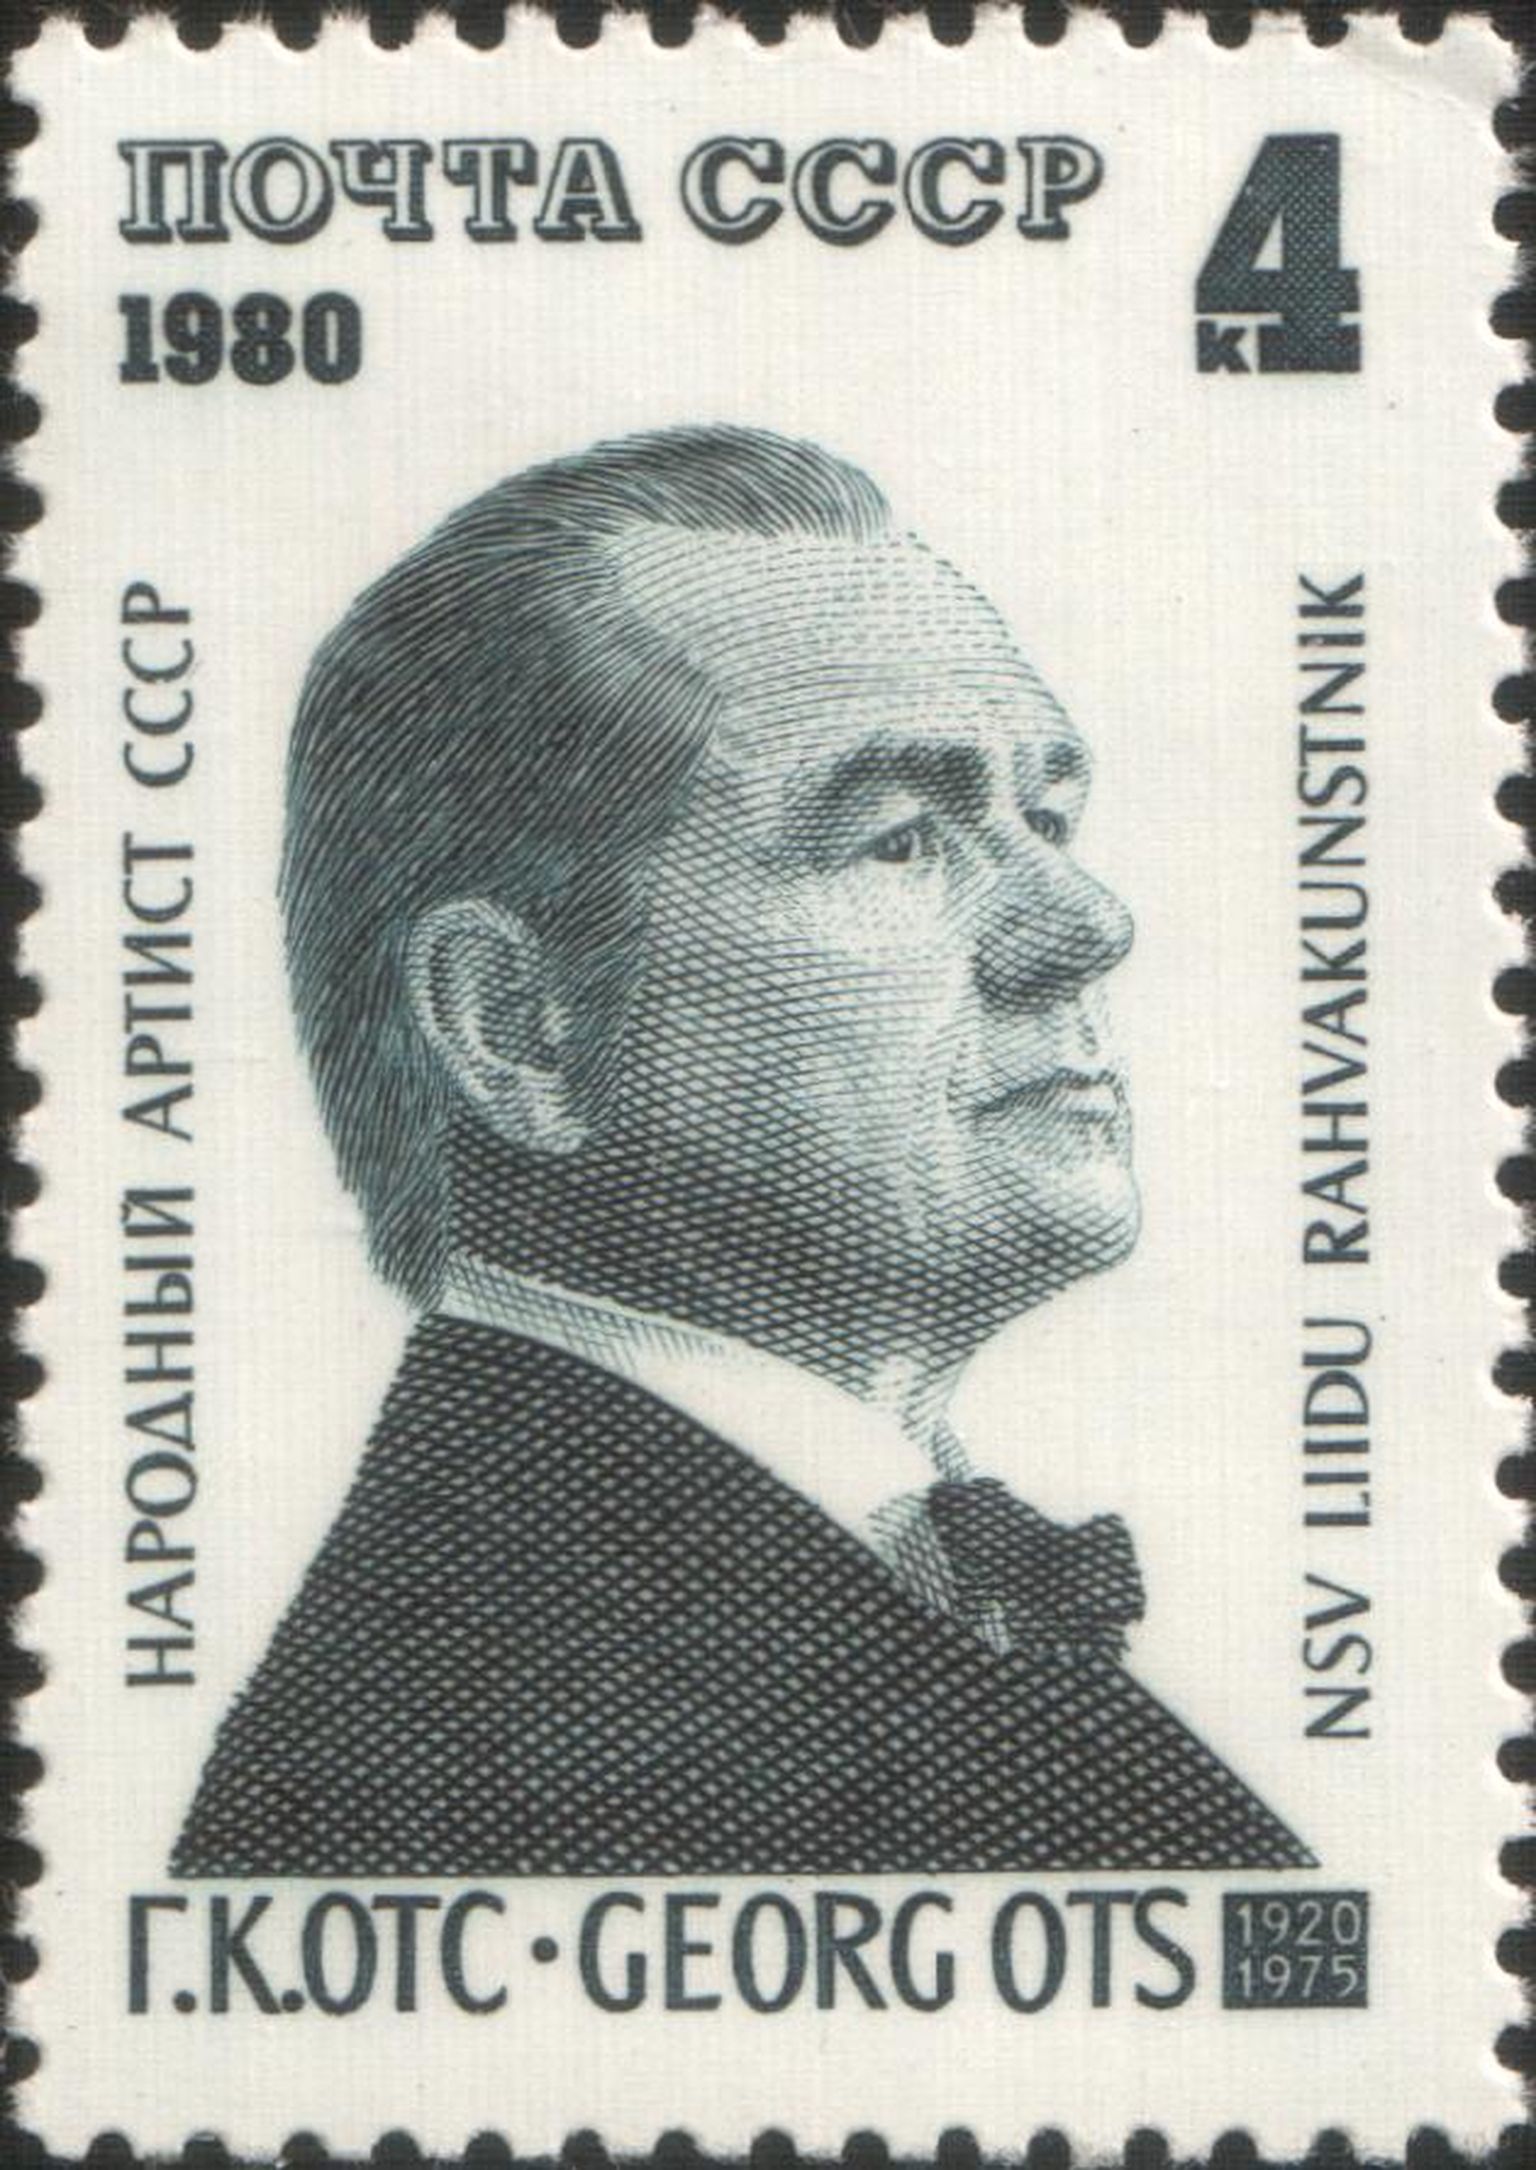 Georg Ots NSVLi postmargil.